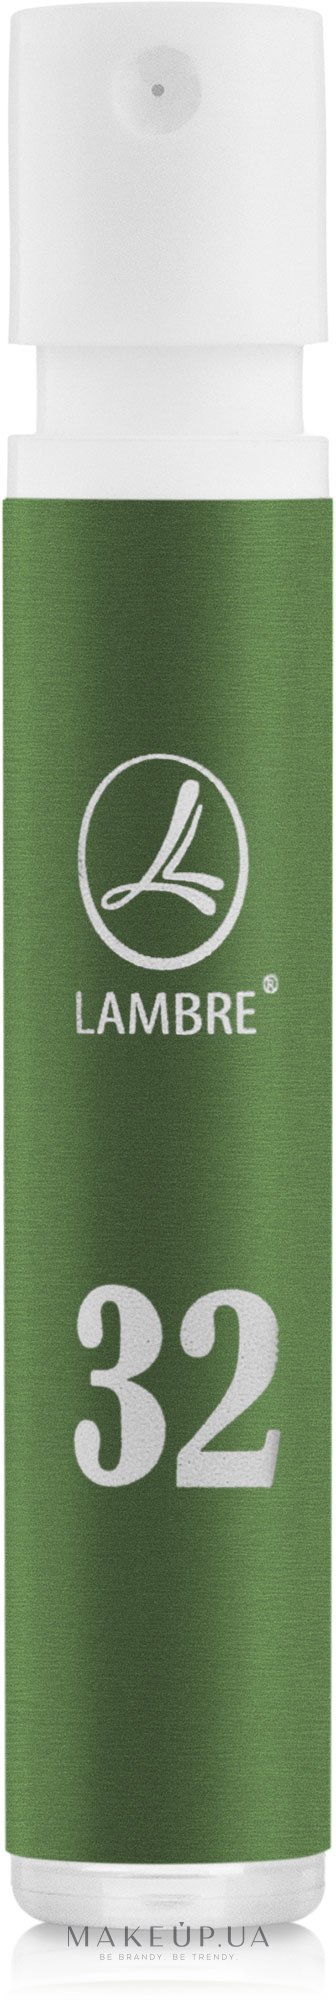 Lambre 32 - Туалетная вода (пробник) — фото 1.2ml